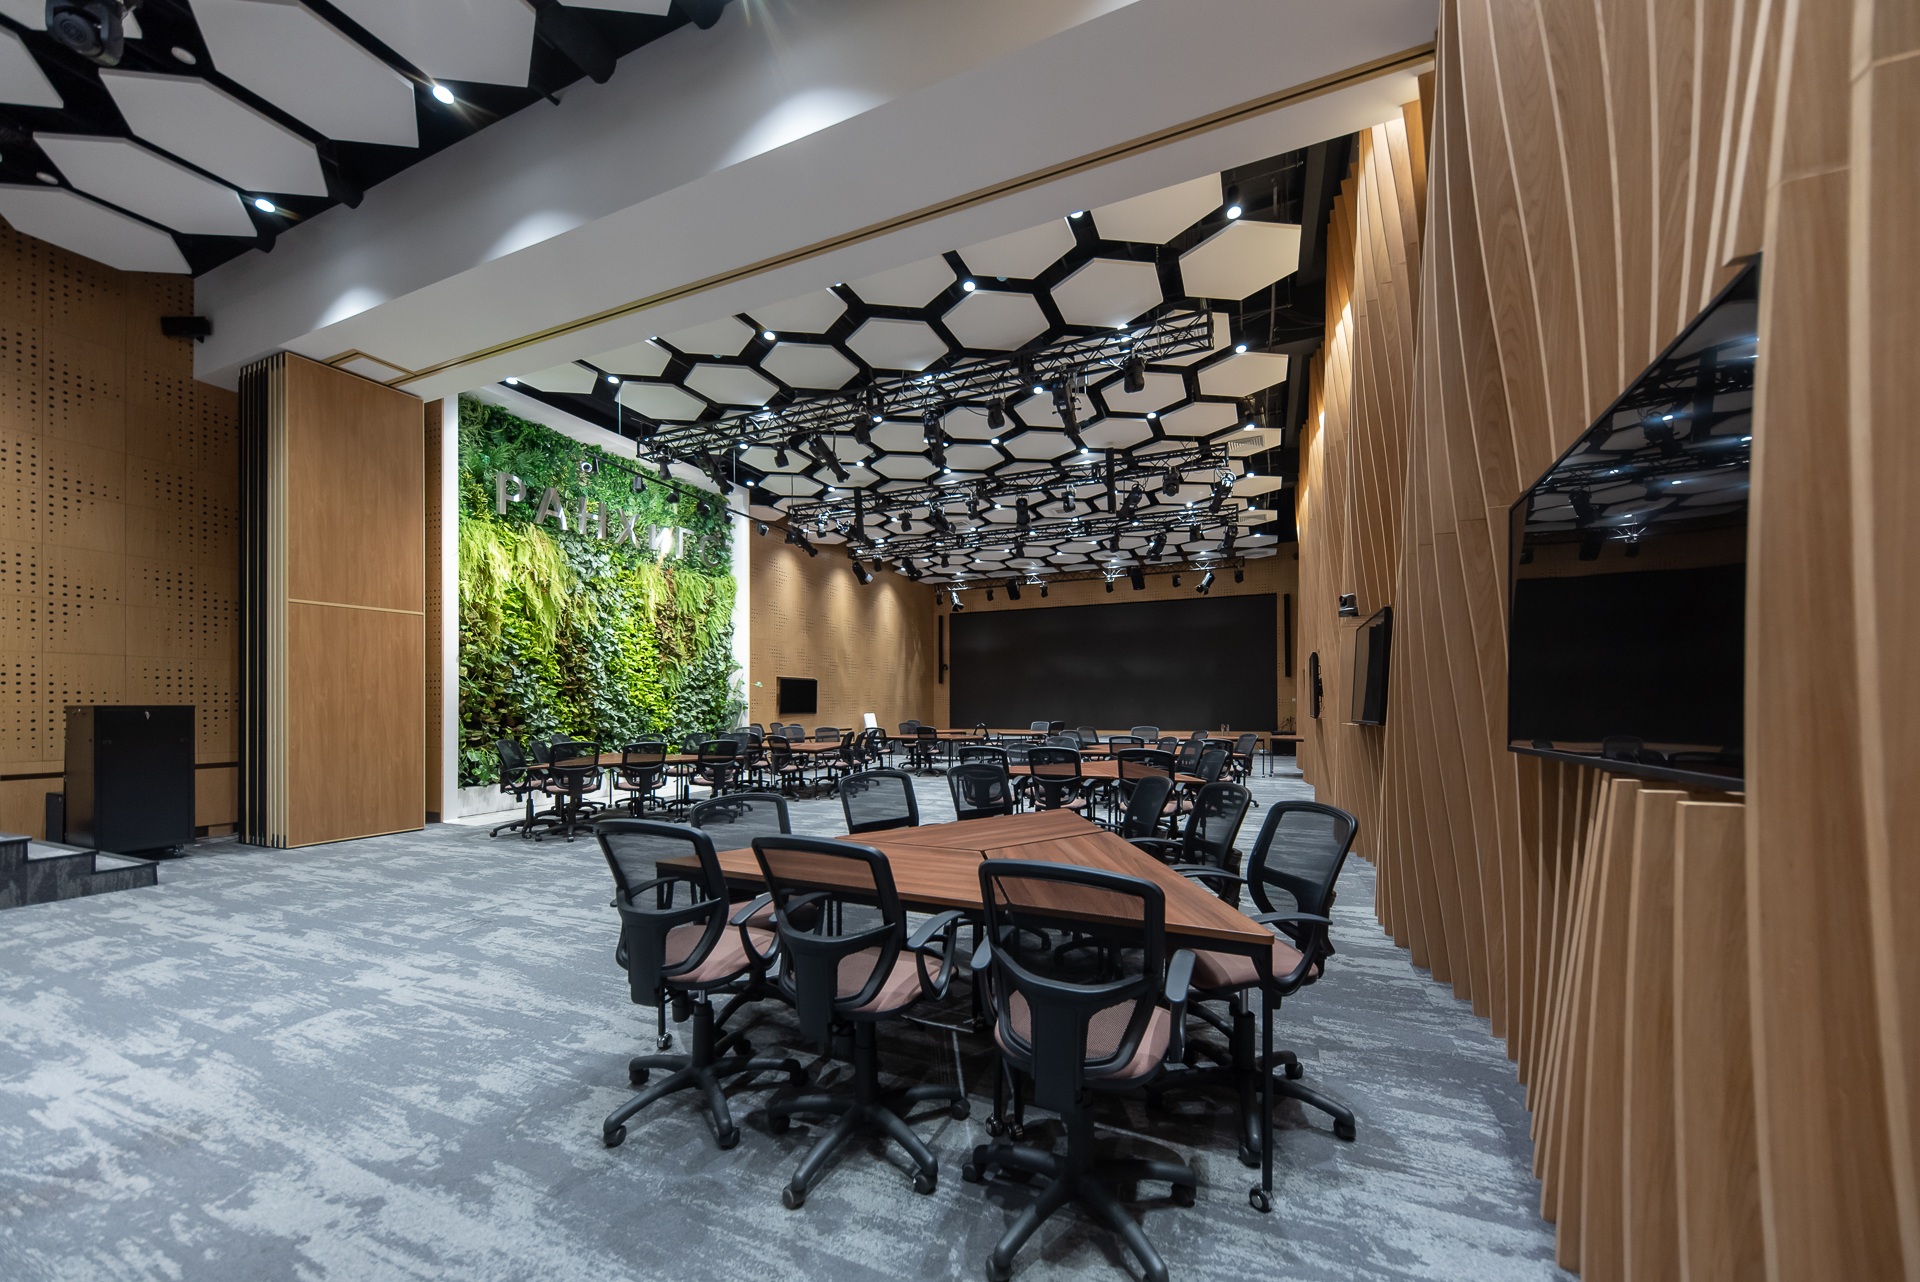 Компания Nayada реализовала в РАНХиГС проект зонирования большого конференц-зала